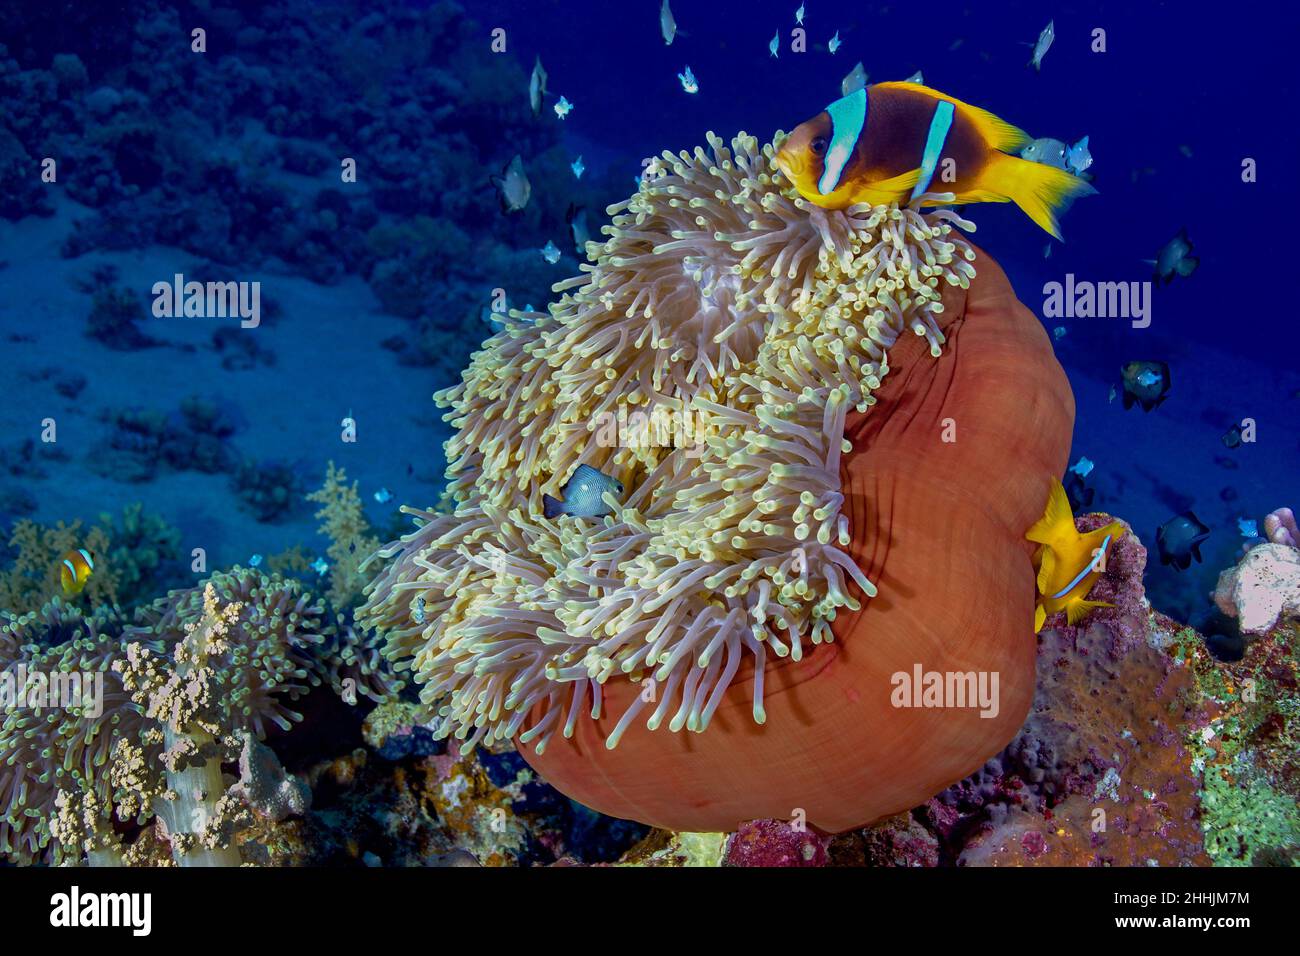 Exotische Clownfische, die in der Nähe von Meeresräubertieren, Seeanemonen im blauen Wasser des Roten Meeres schwimmen Stockfoto